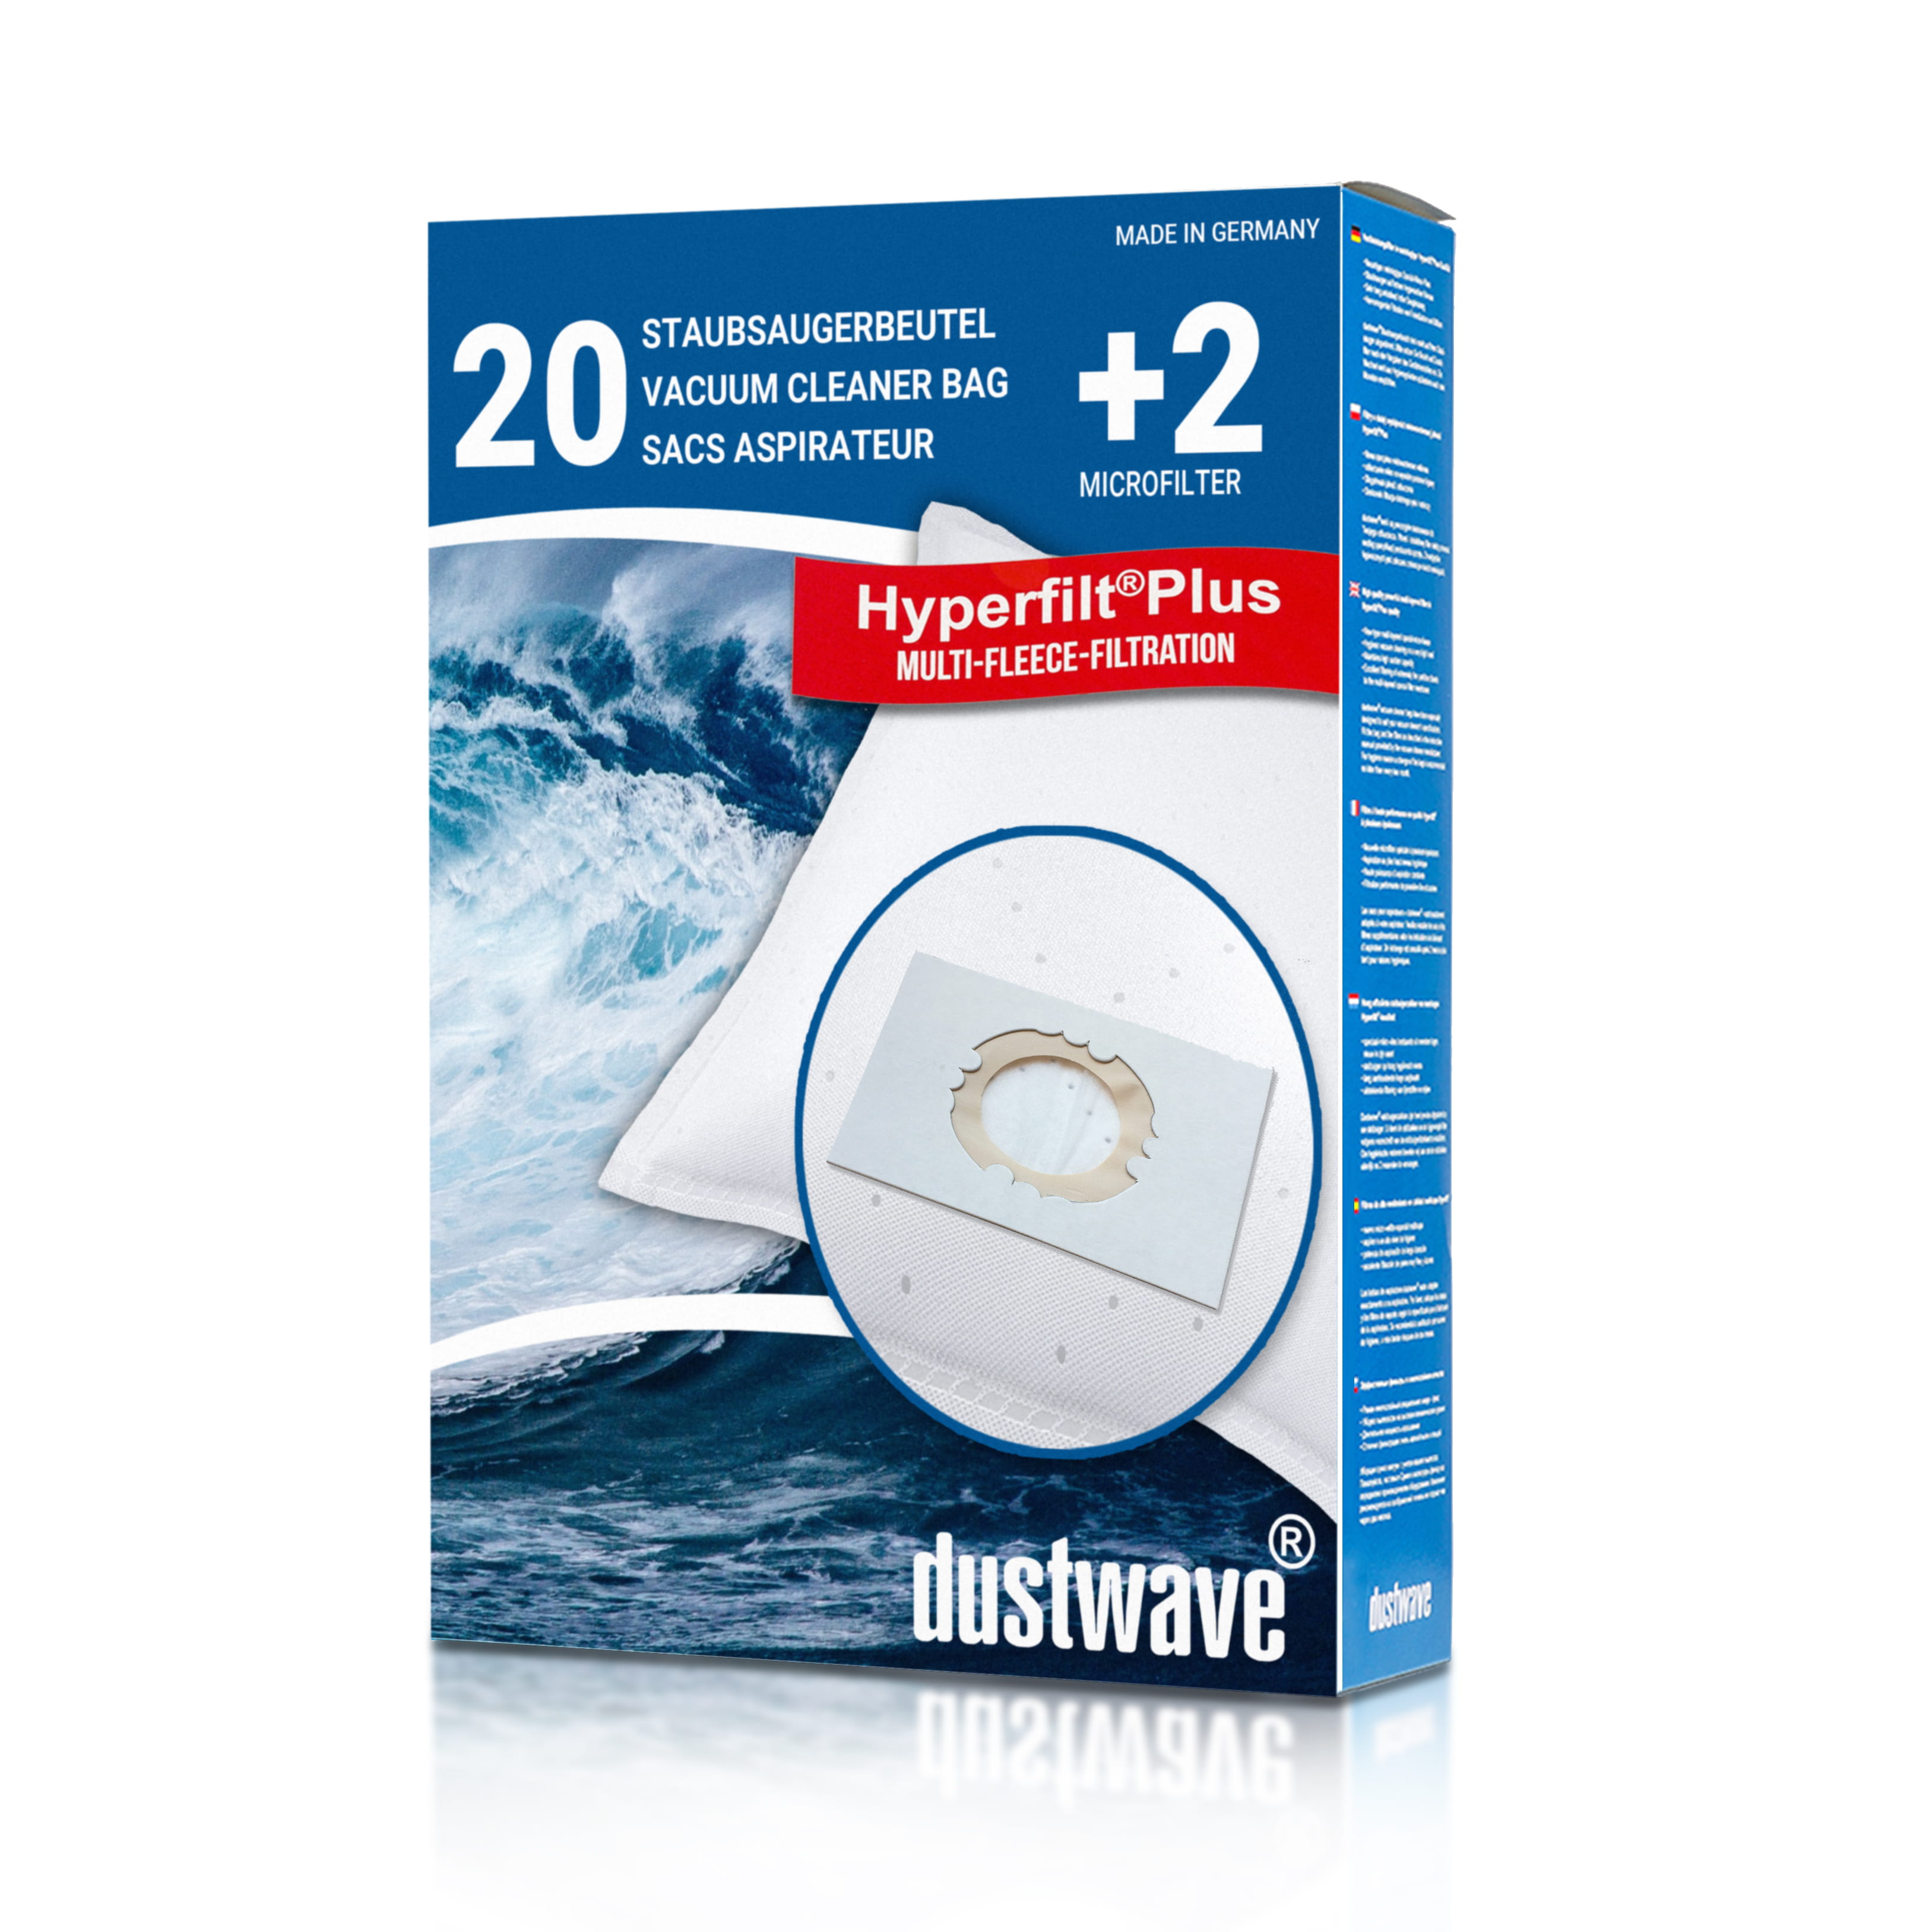 Dustwave® 20 Staubsaugerbeutel für Hoover SCST730FB011 - hocheffizient, mehrlagiges Mikrovlies mit Hygieneverschluss - Made in Germany